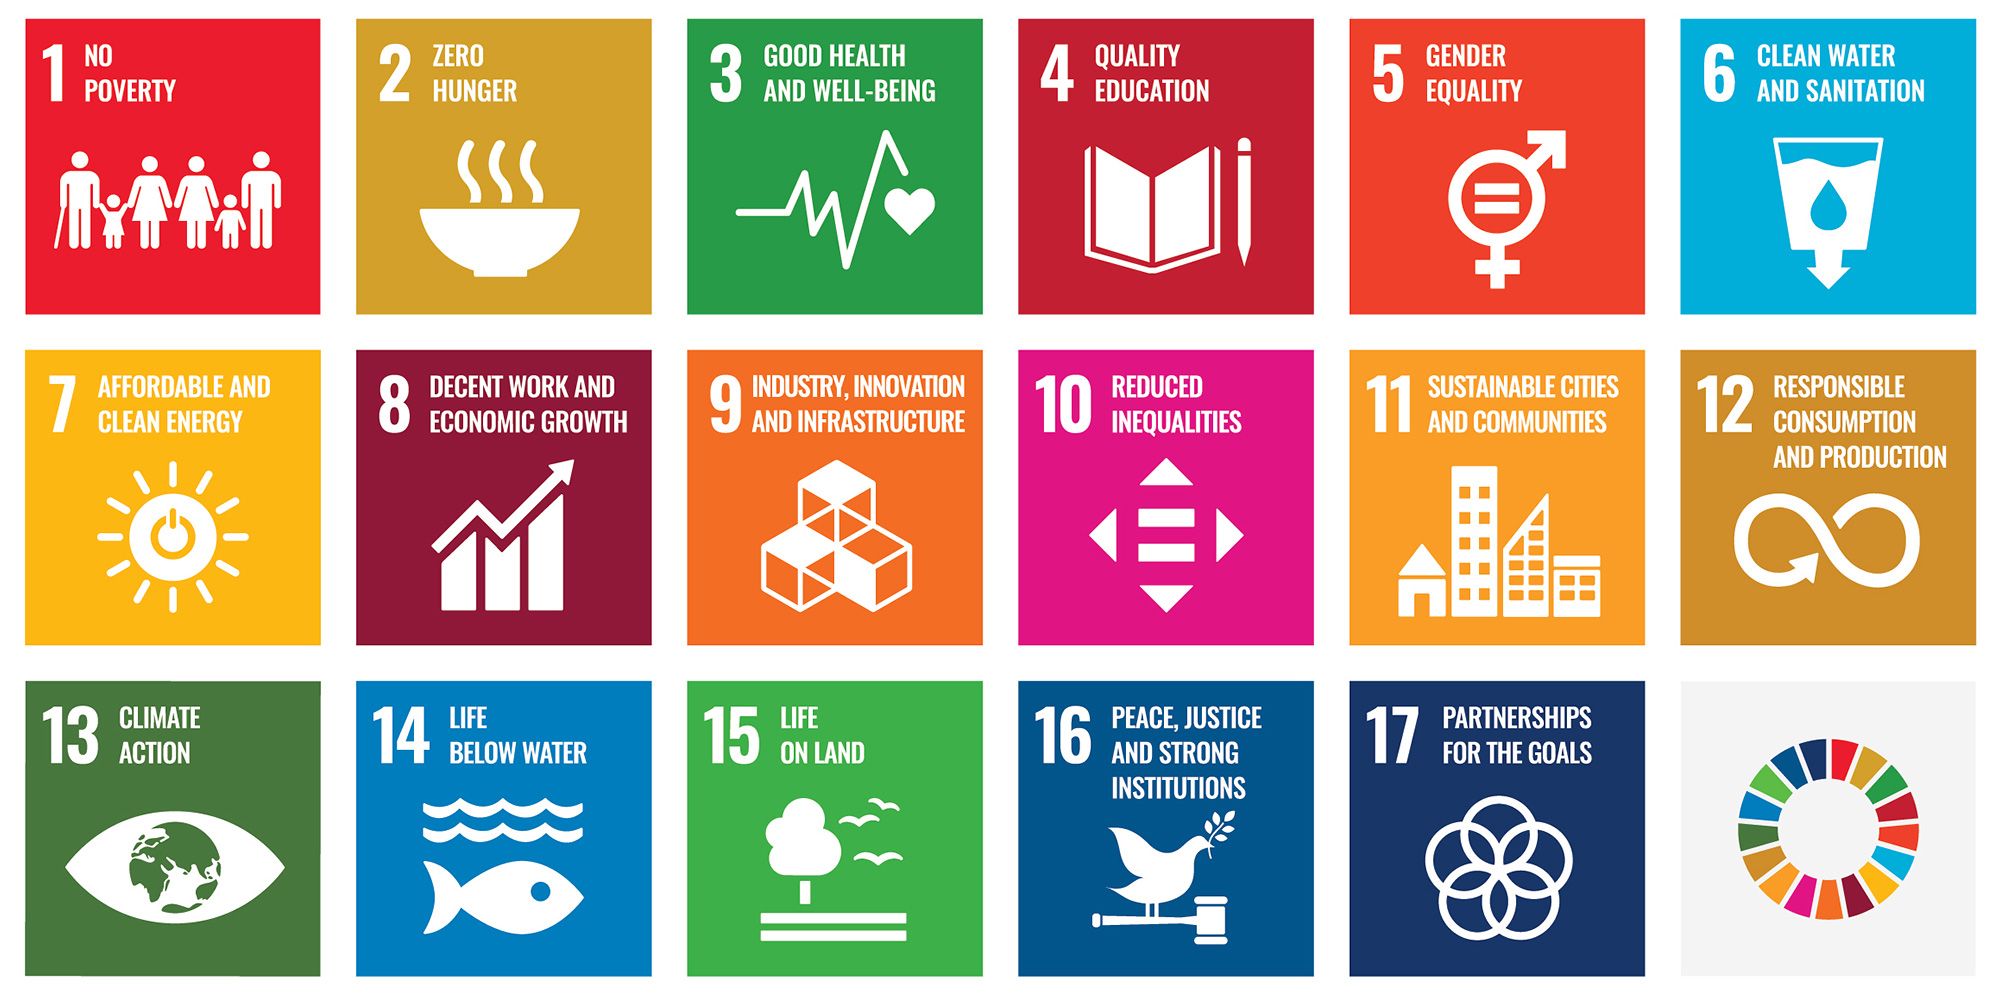 Sustainable Development Goals in Berlin